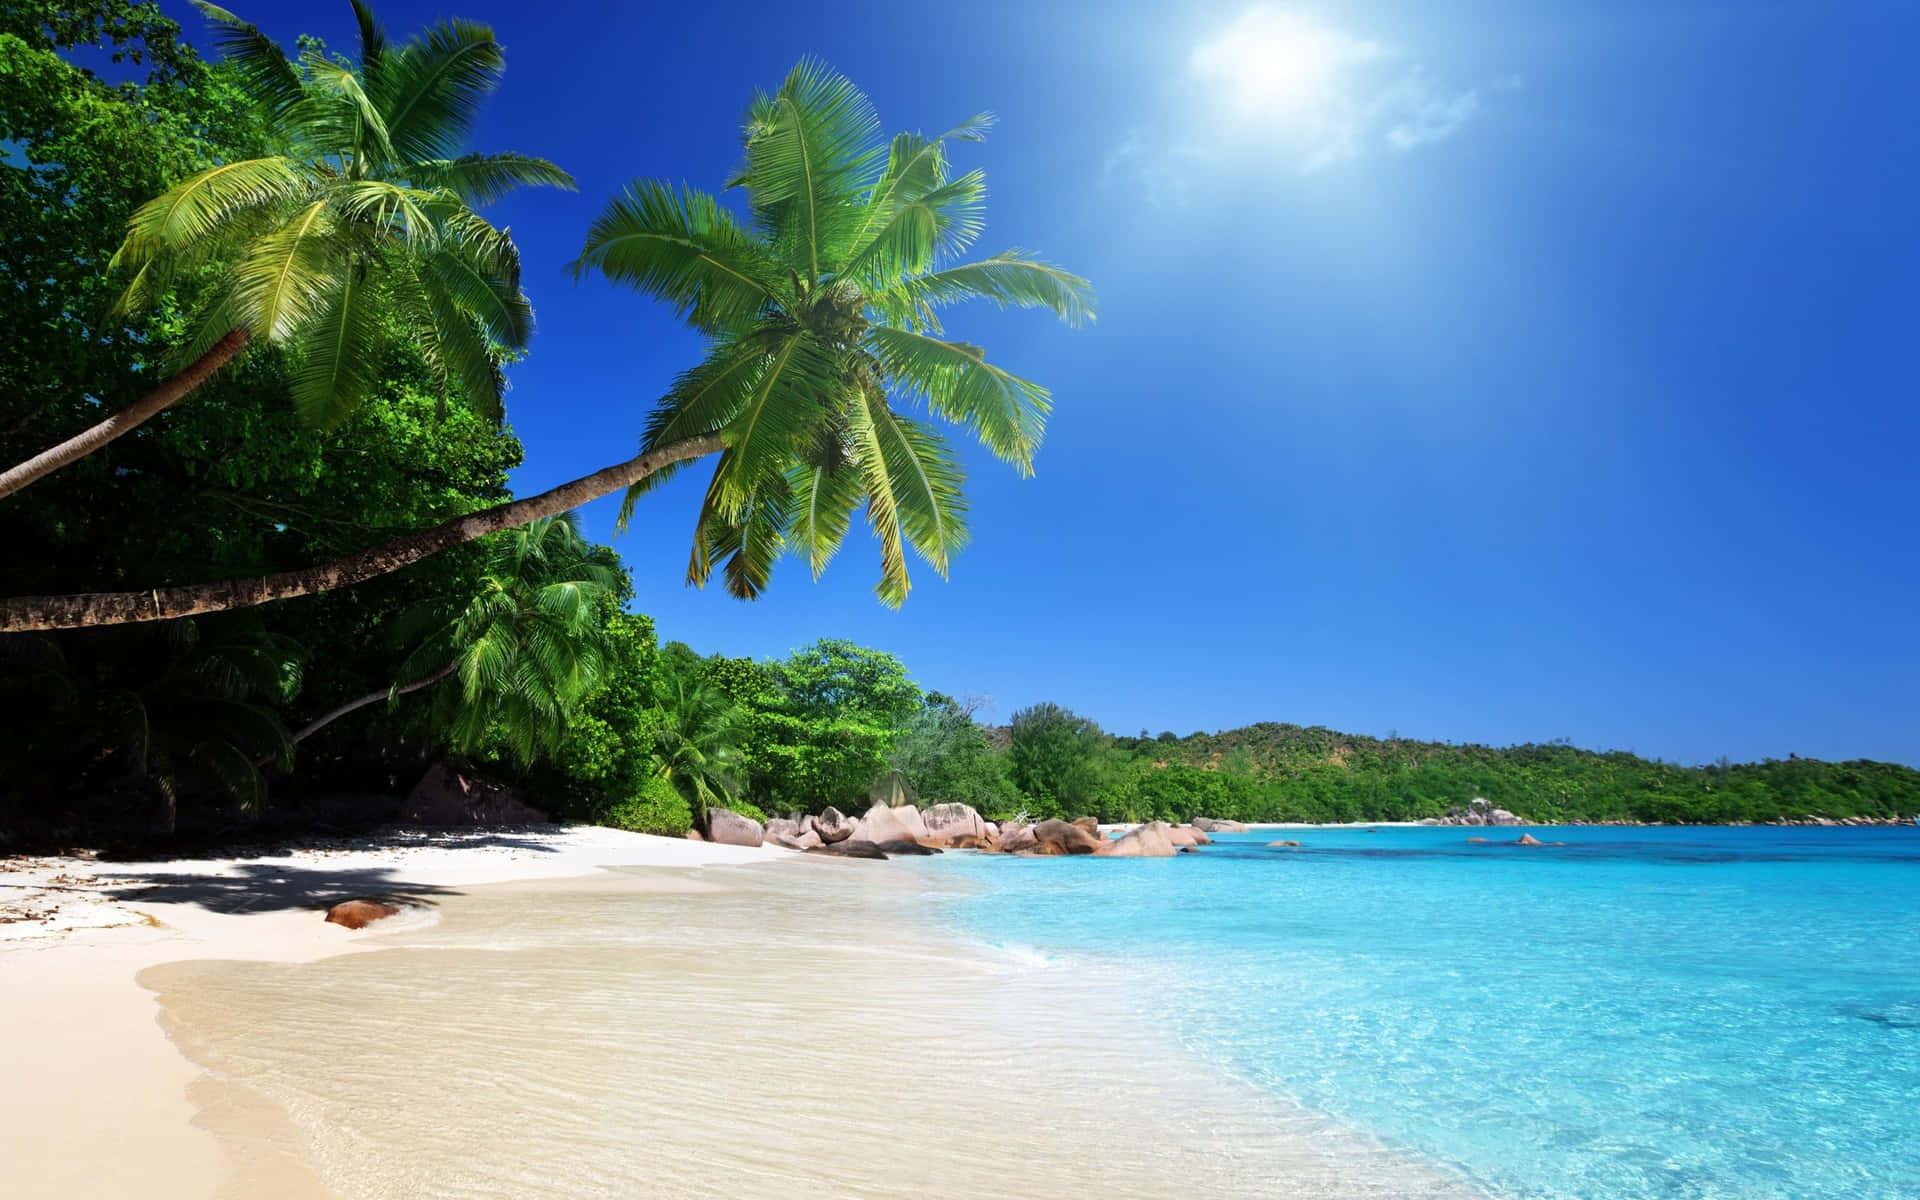 Unosplendido Scenario Di Spiaggia Con Acqua Cristallina Di Un Colore Blu Intenso E Una Spiaggia Di Sabbia Bianca